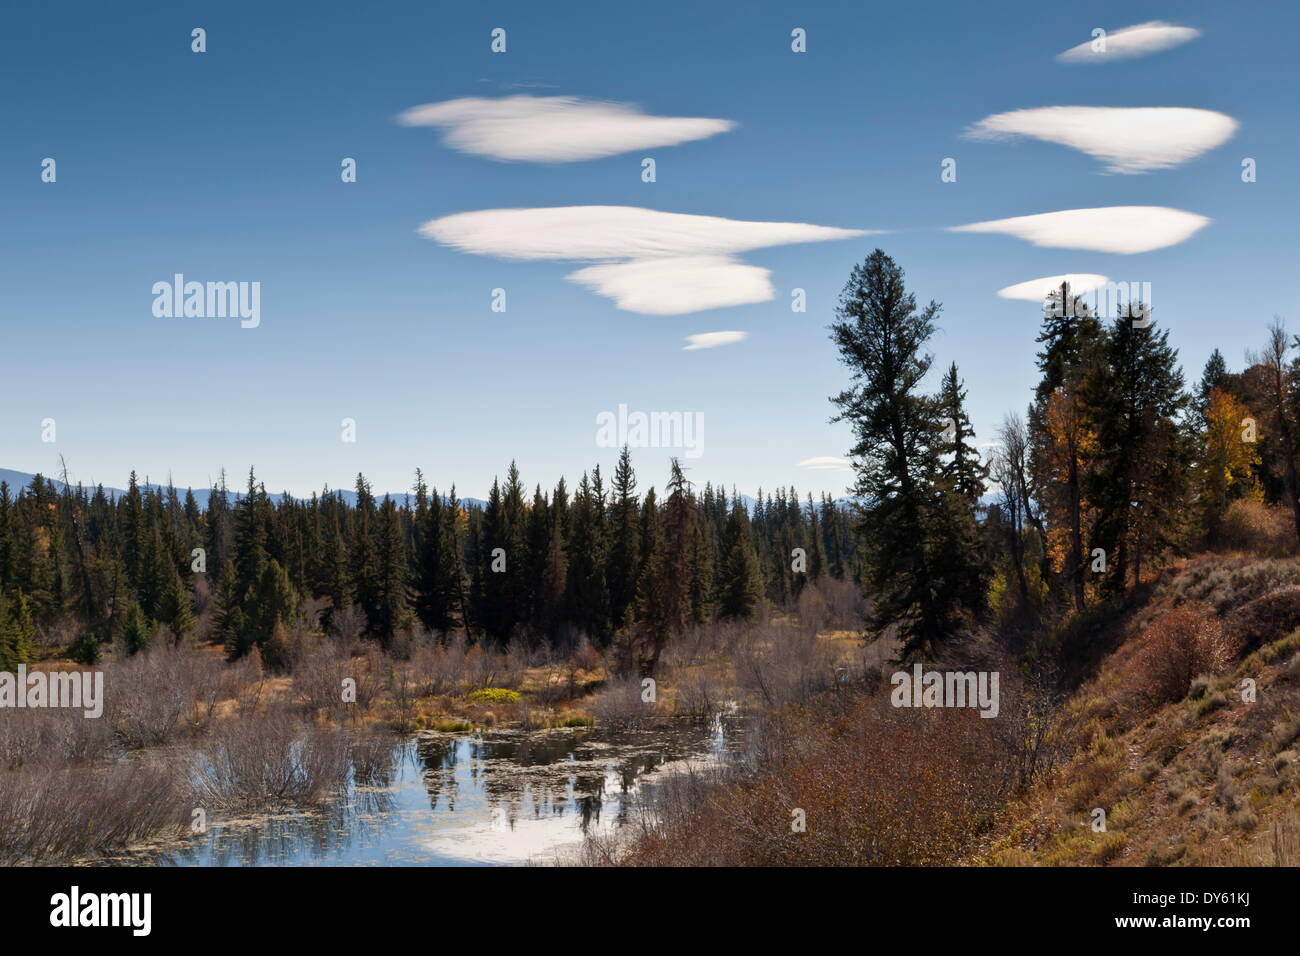 Linsenförmige Wolken über Moose Pond, Herbst, Grand-Teton-Nationalpark, Wyoming, Vereinigte Staaten von Amerika, Nordamerika Stockfoto